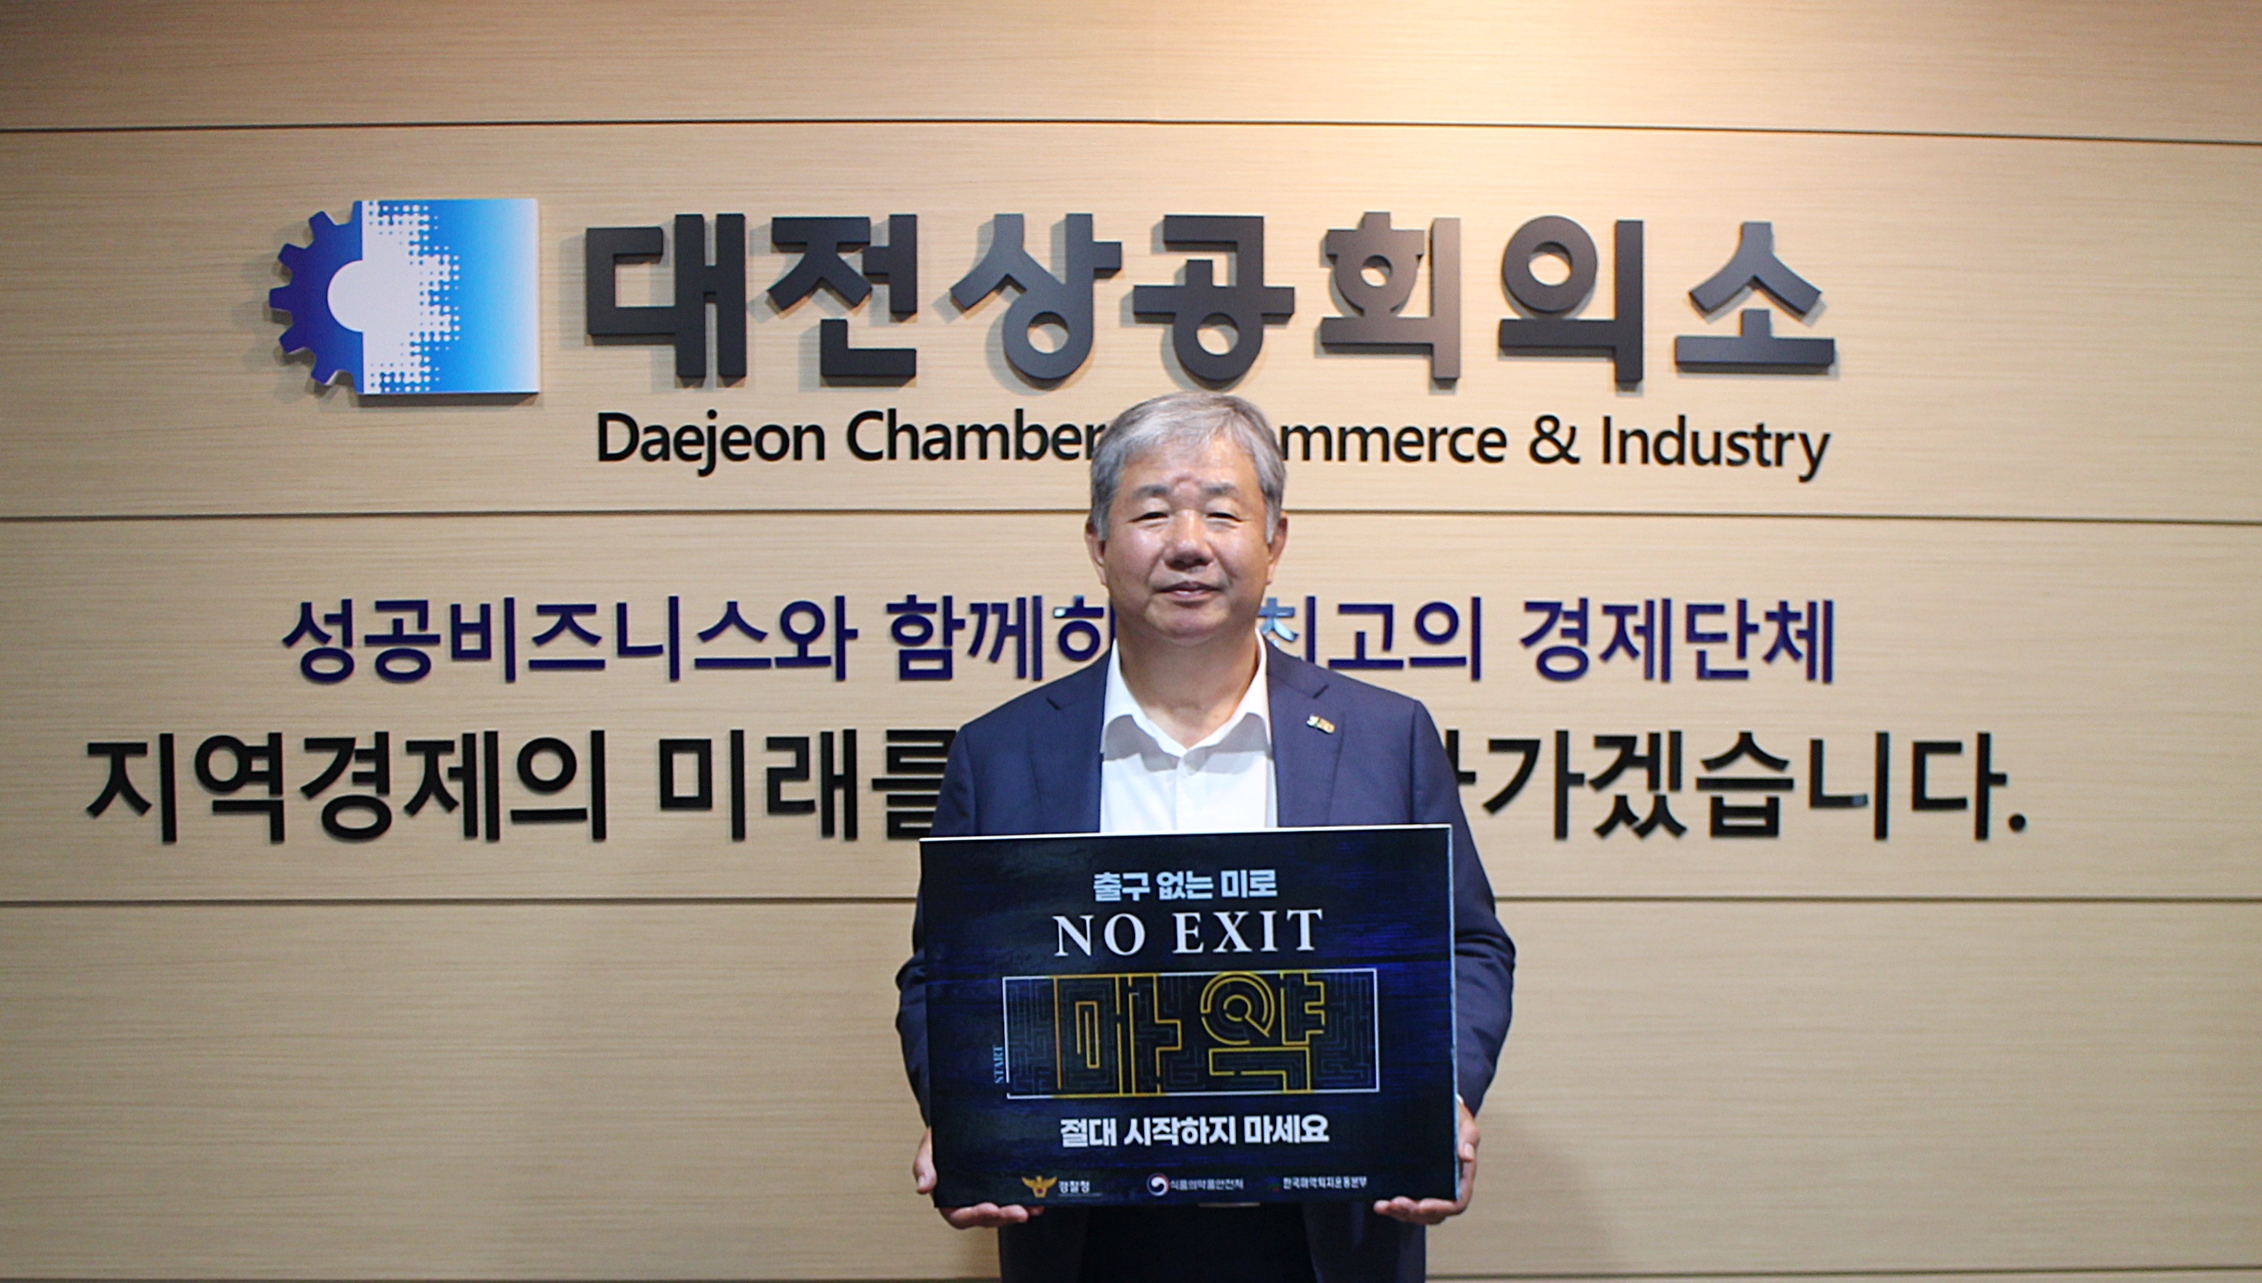 정태희 대전상의 회장, 'NO EXIT' 릴레이 캠페인 동참